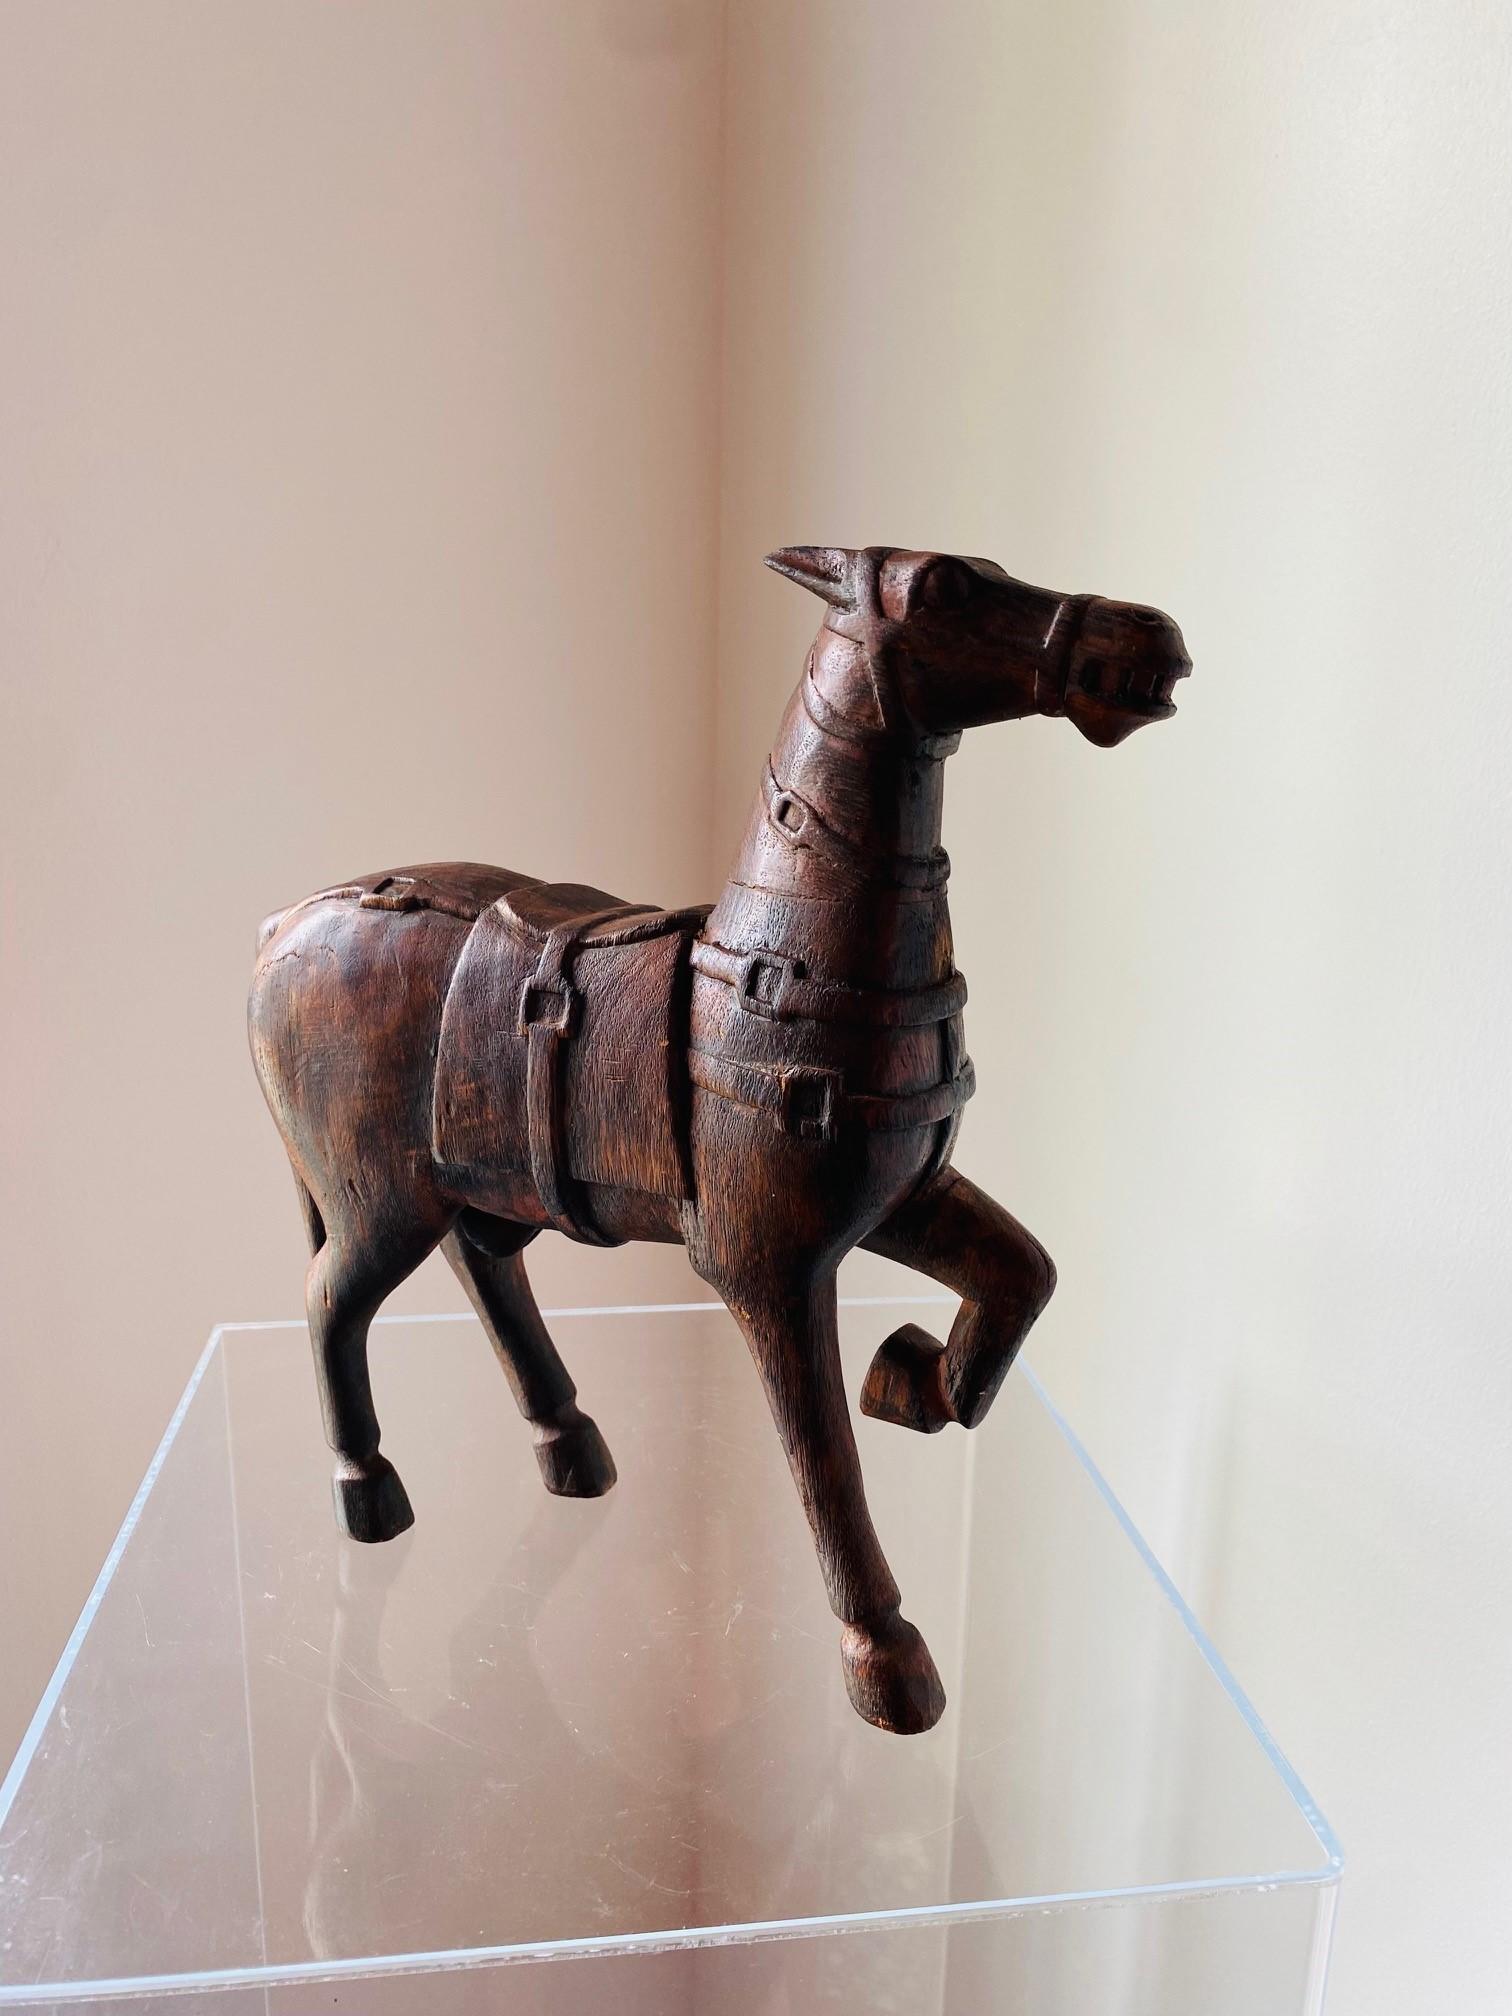 Das wunderschön handgeschnitzte chinesische Holzpferd ist im Stil der Pferde aus der Tang-Dynastie gehalten. Das MATERIAL ist ein dunkles Holz mit Resten von roter Farbe. Teile wurden separat geschnitzt und dann angebracht, wie z. B. das erhöhte